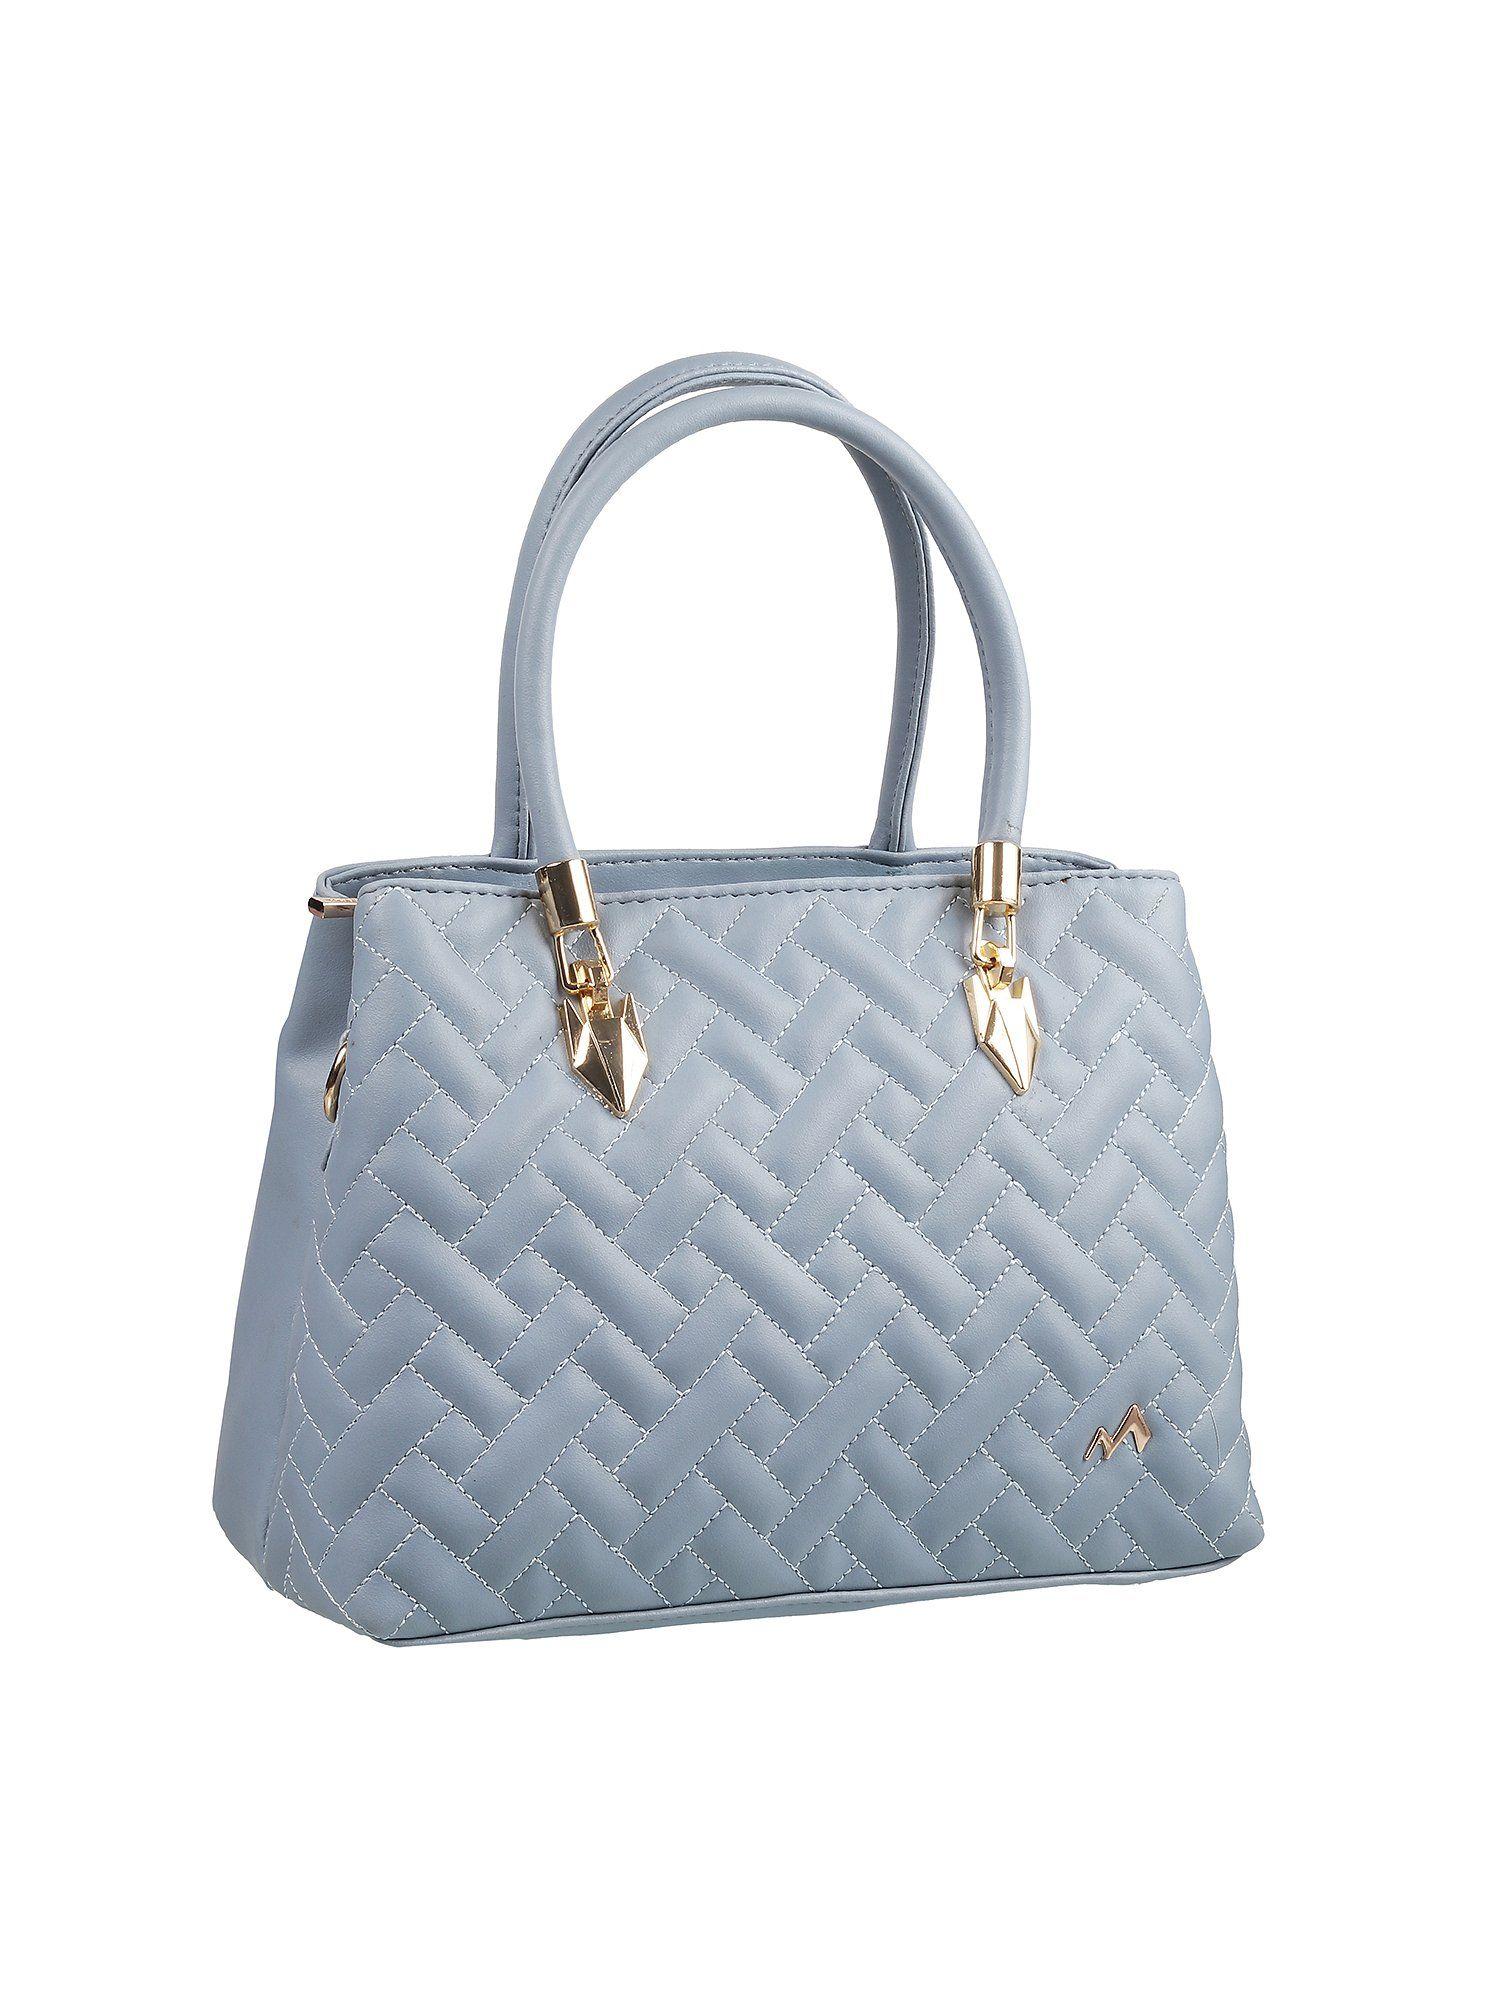 patterned light blue handbag